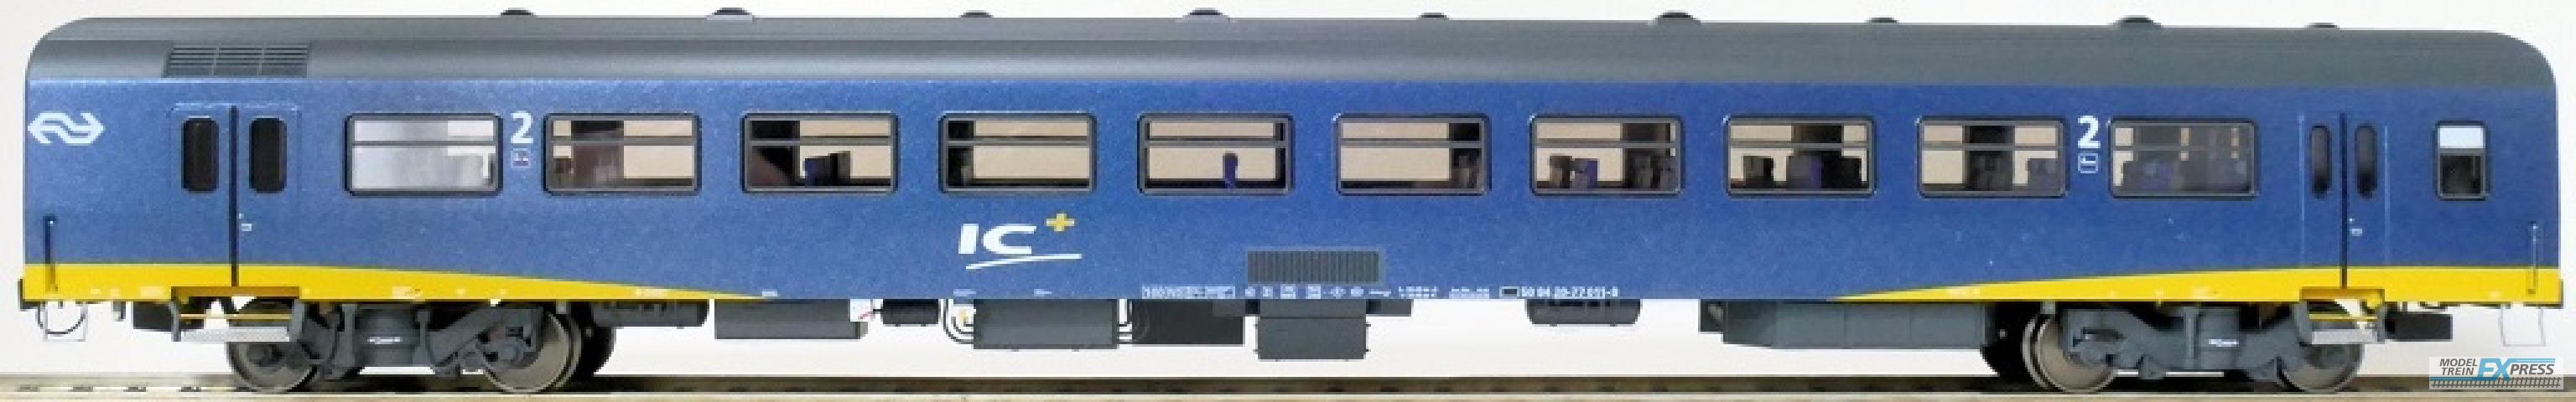 Exact-train 11120 NS ICR Plus Reisezugwagen B ( Farbe Blau), Ep. IV